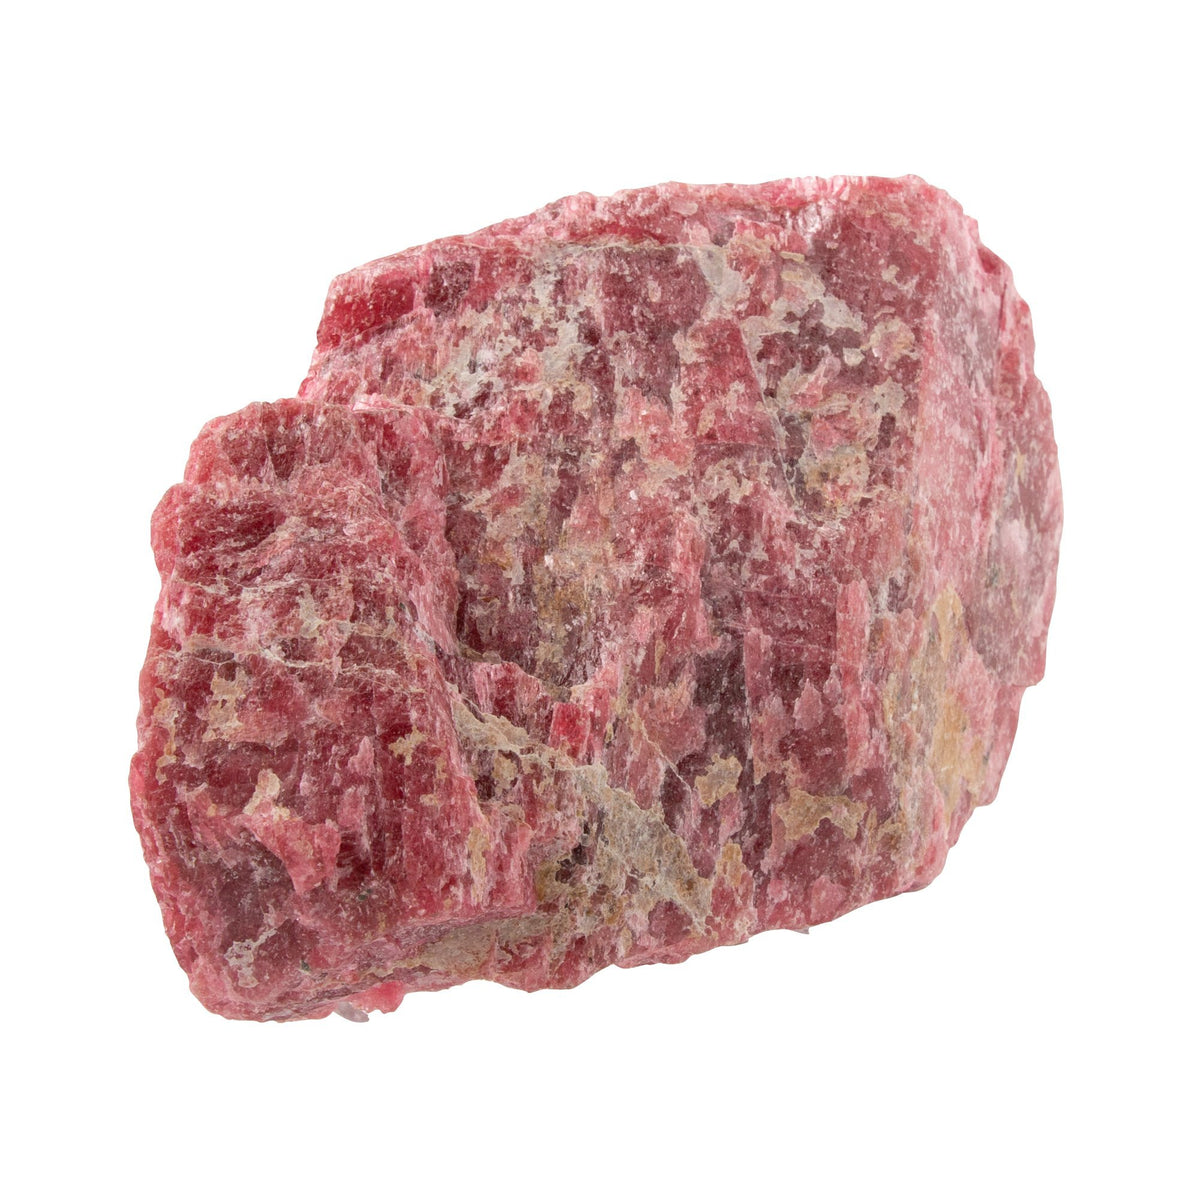 Raspberry Rhodonite Mineral Specimen - Kingdom Jewelry